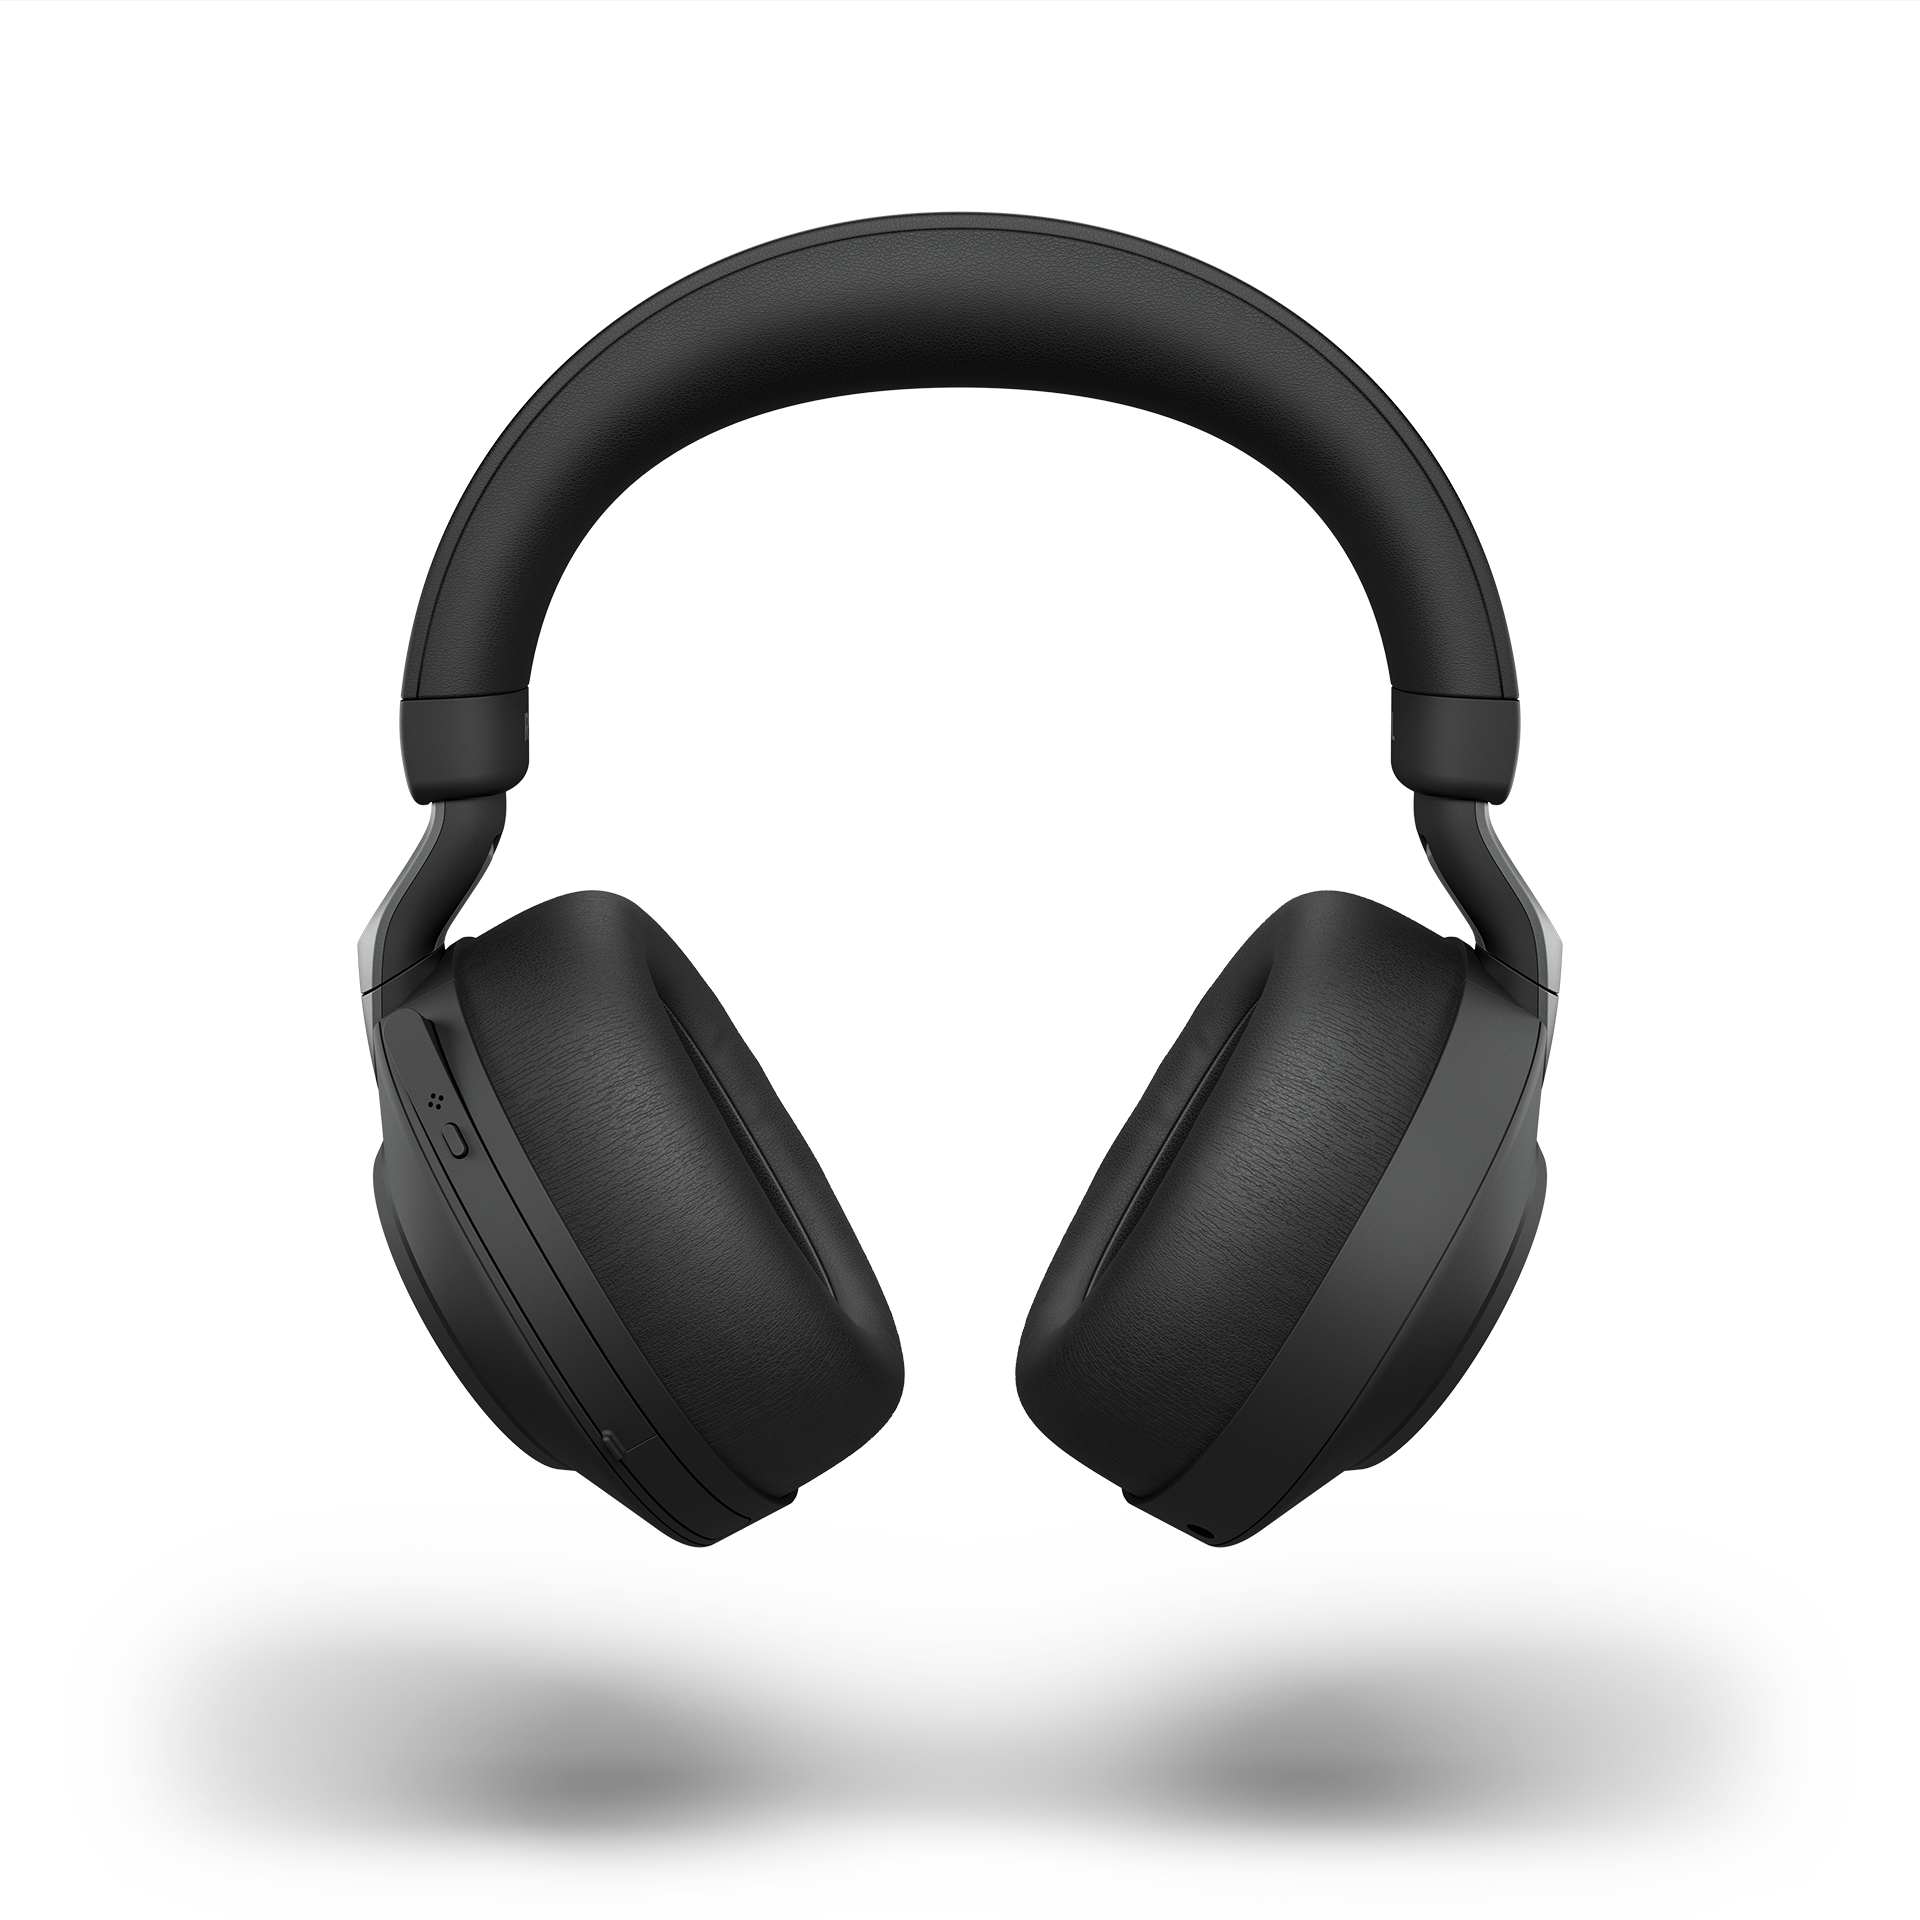 Sort Evolve2 85-headset front